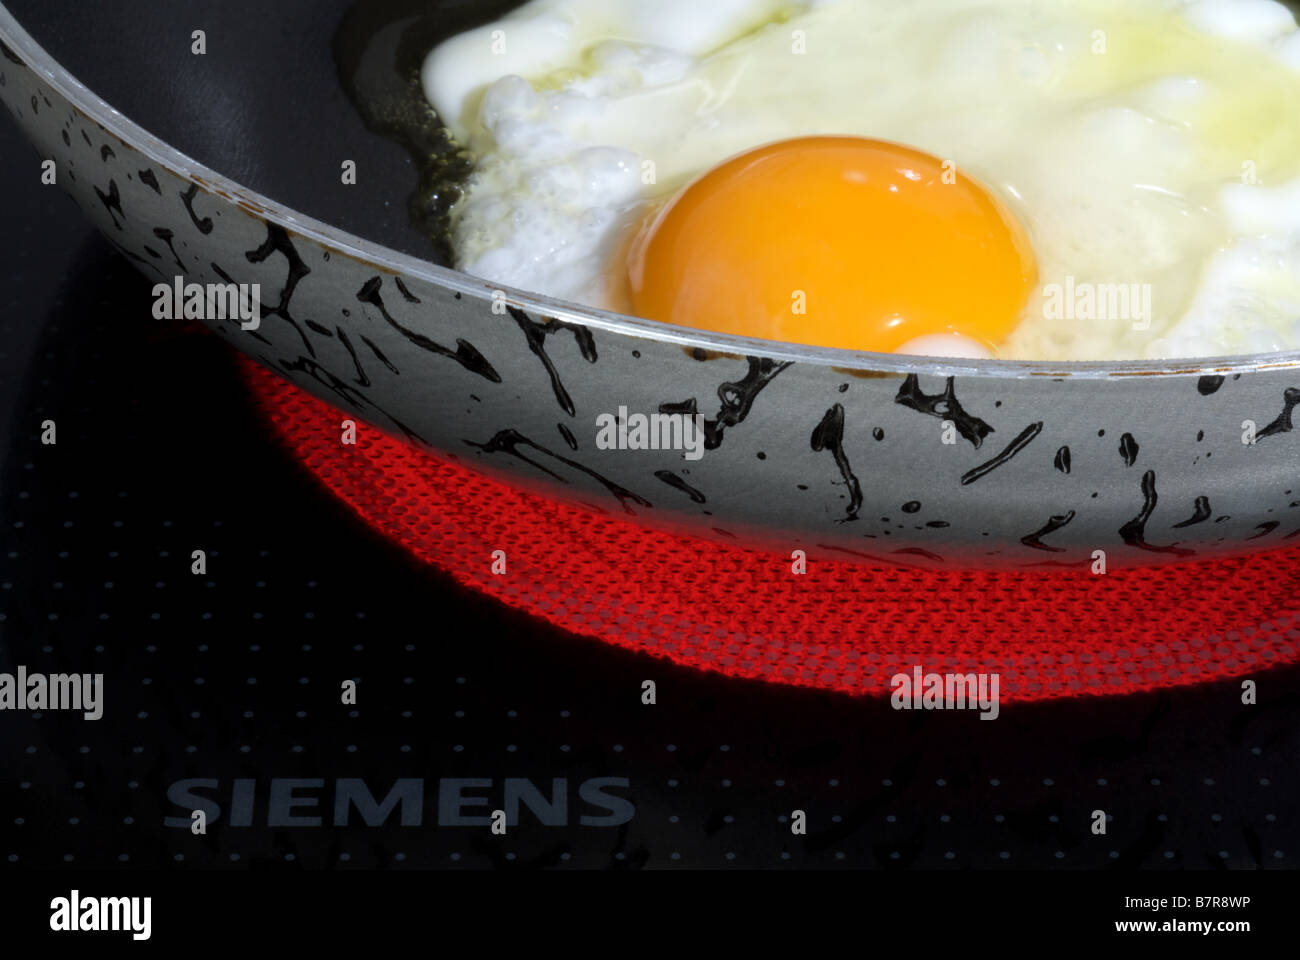 La cuisinière électrique vitrocéramique Siemens Photo Stock - Alamy